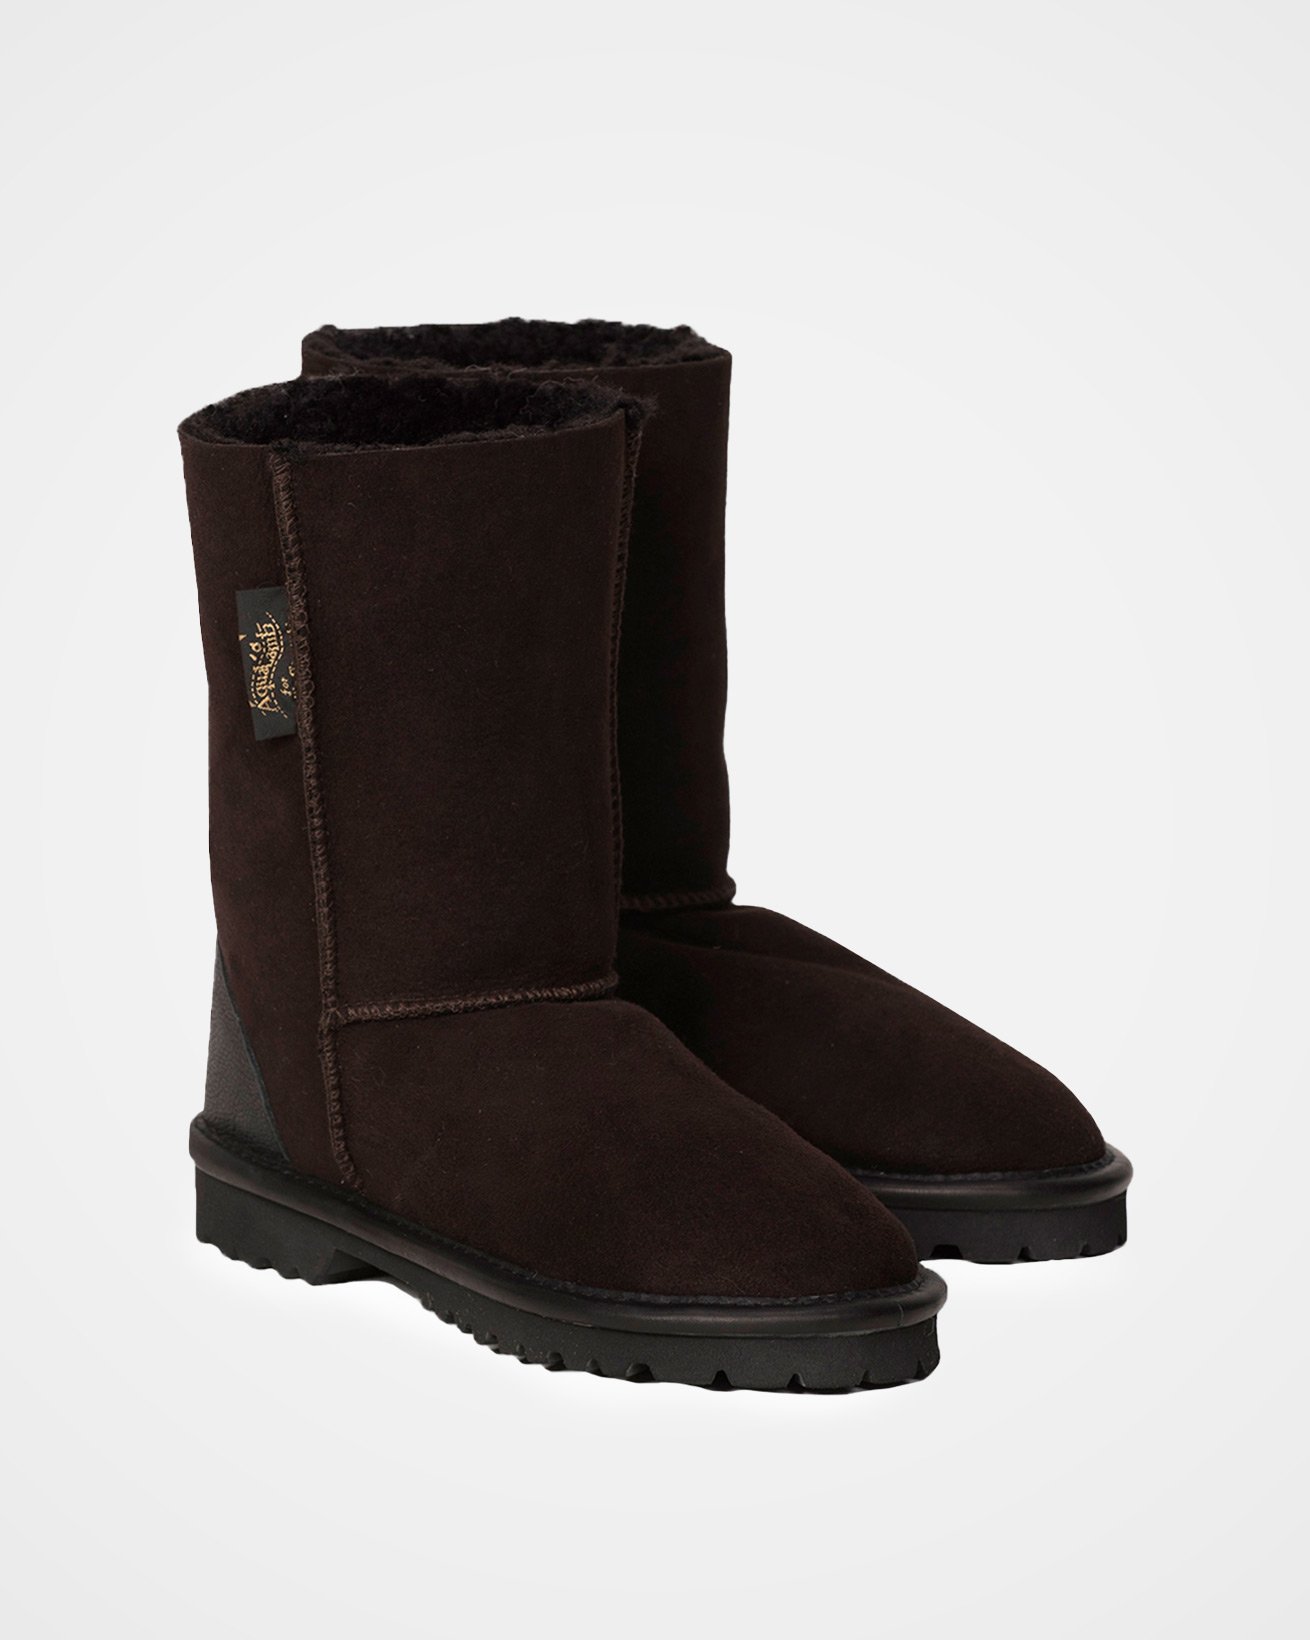 Aqualamb Boots Regular / Darkest Brown / 9